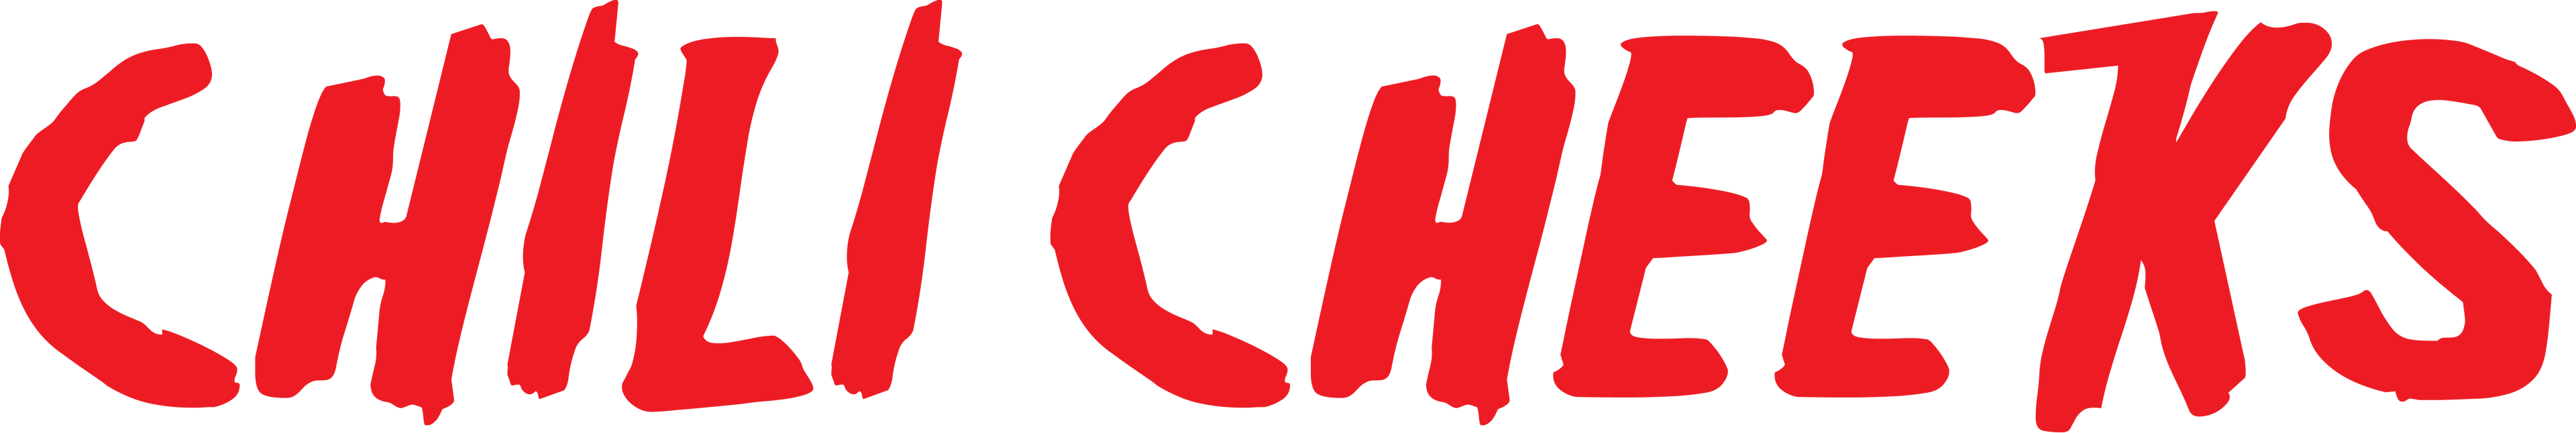 chilicheeks